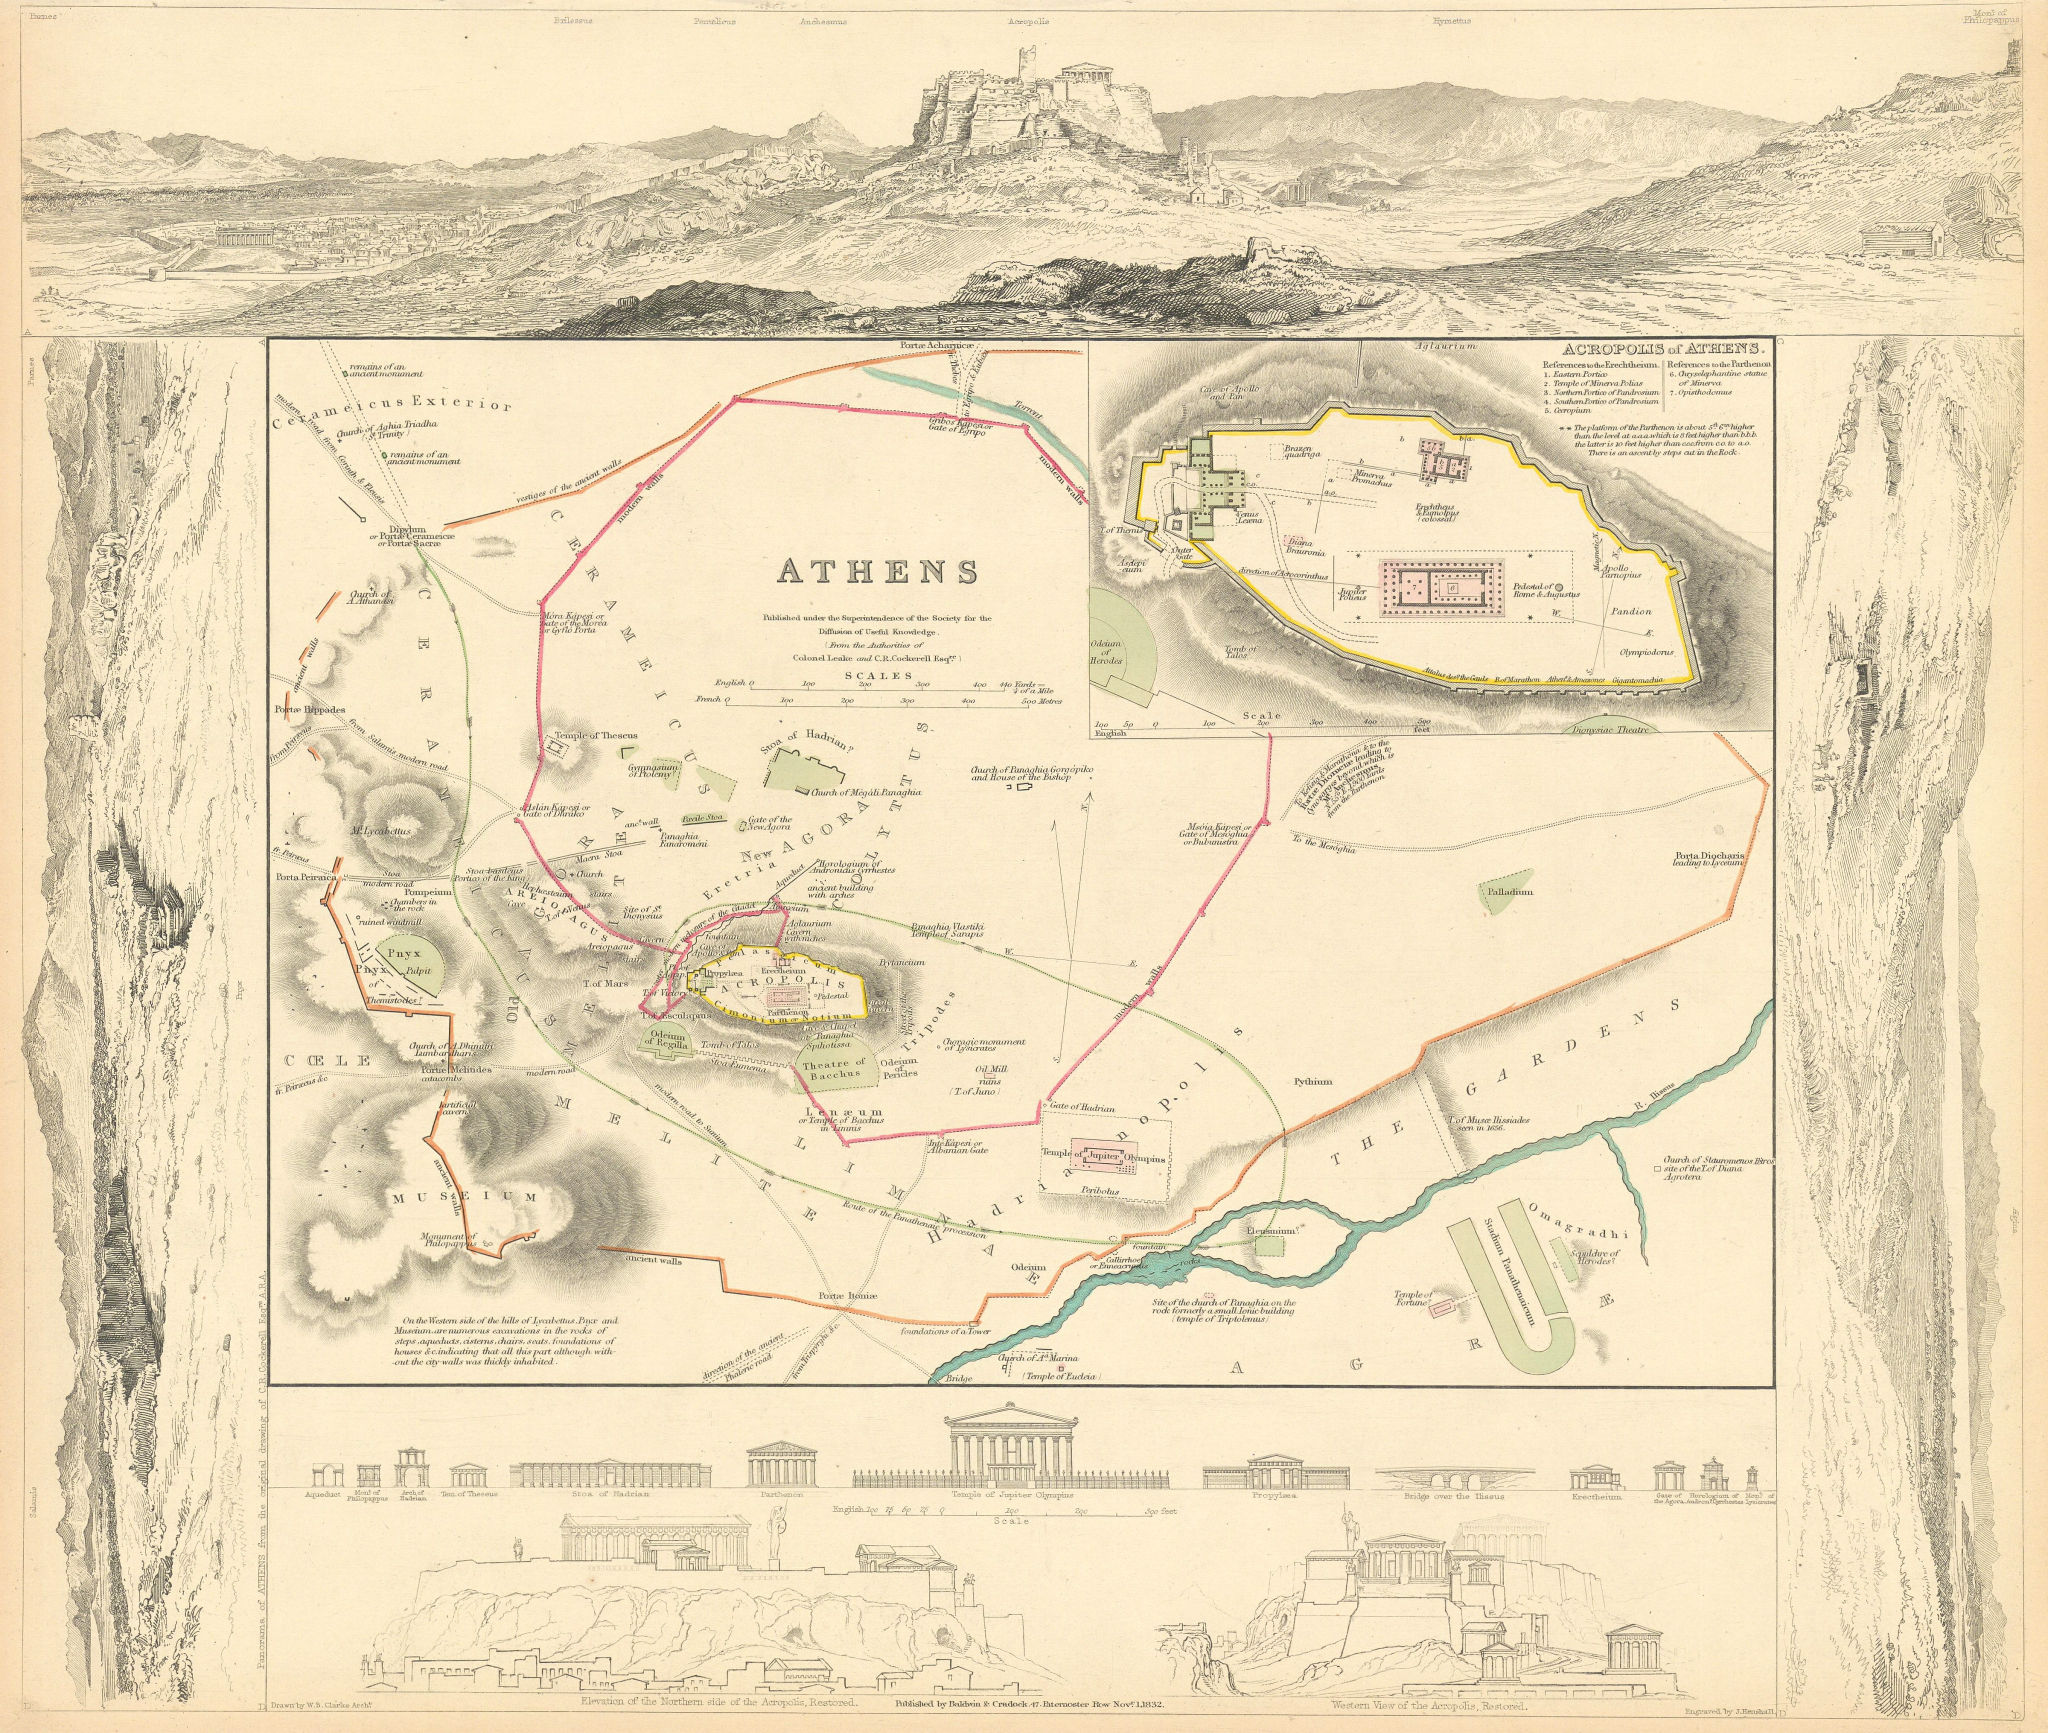 Associate Product ANCIENT ATHENS. Αθήνα. Antique town city map plan. Acropolis. SDUK 1844